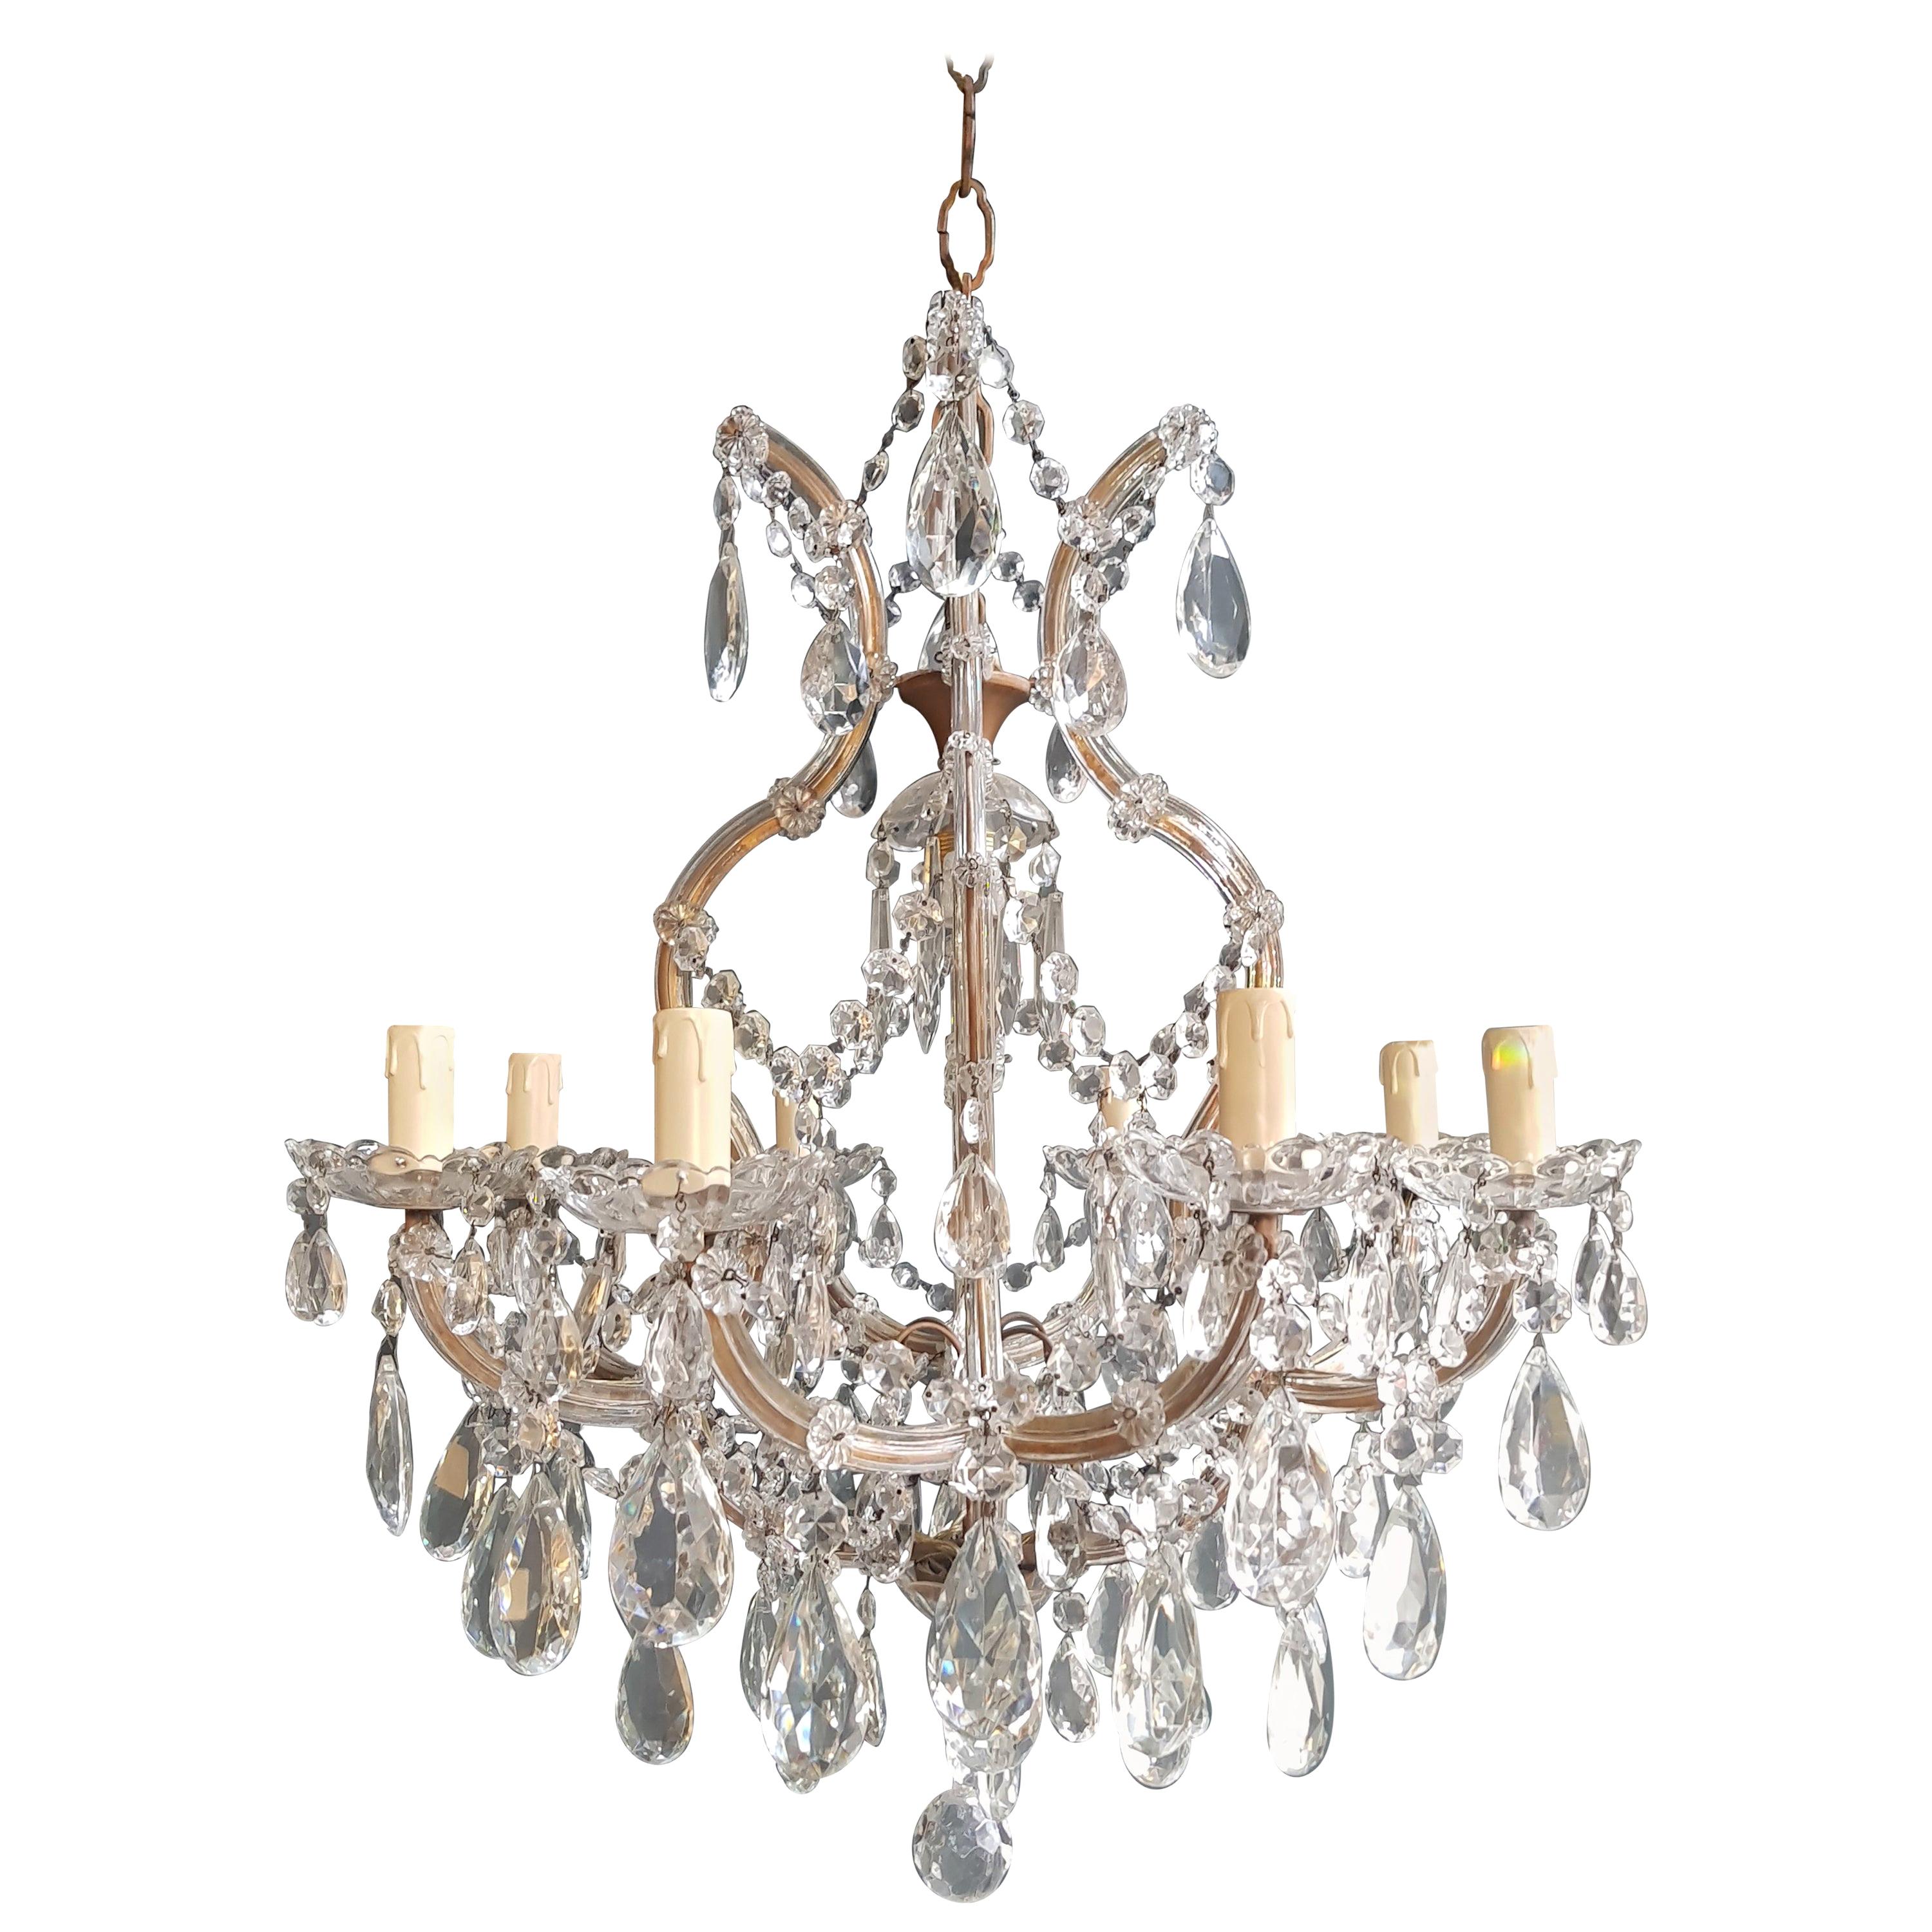 Maria Theresa Crystal Chandelier Antique Ceiling Lamp Lustre Art Nouveau